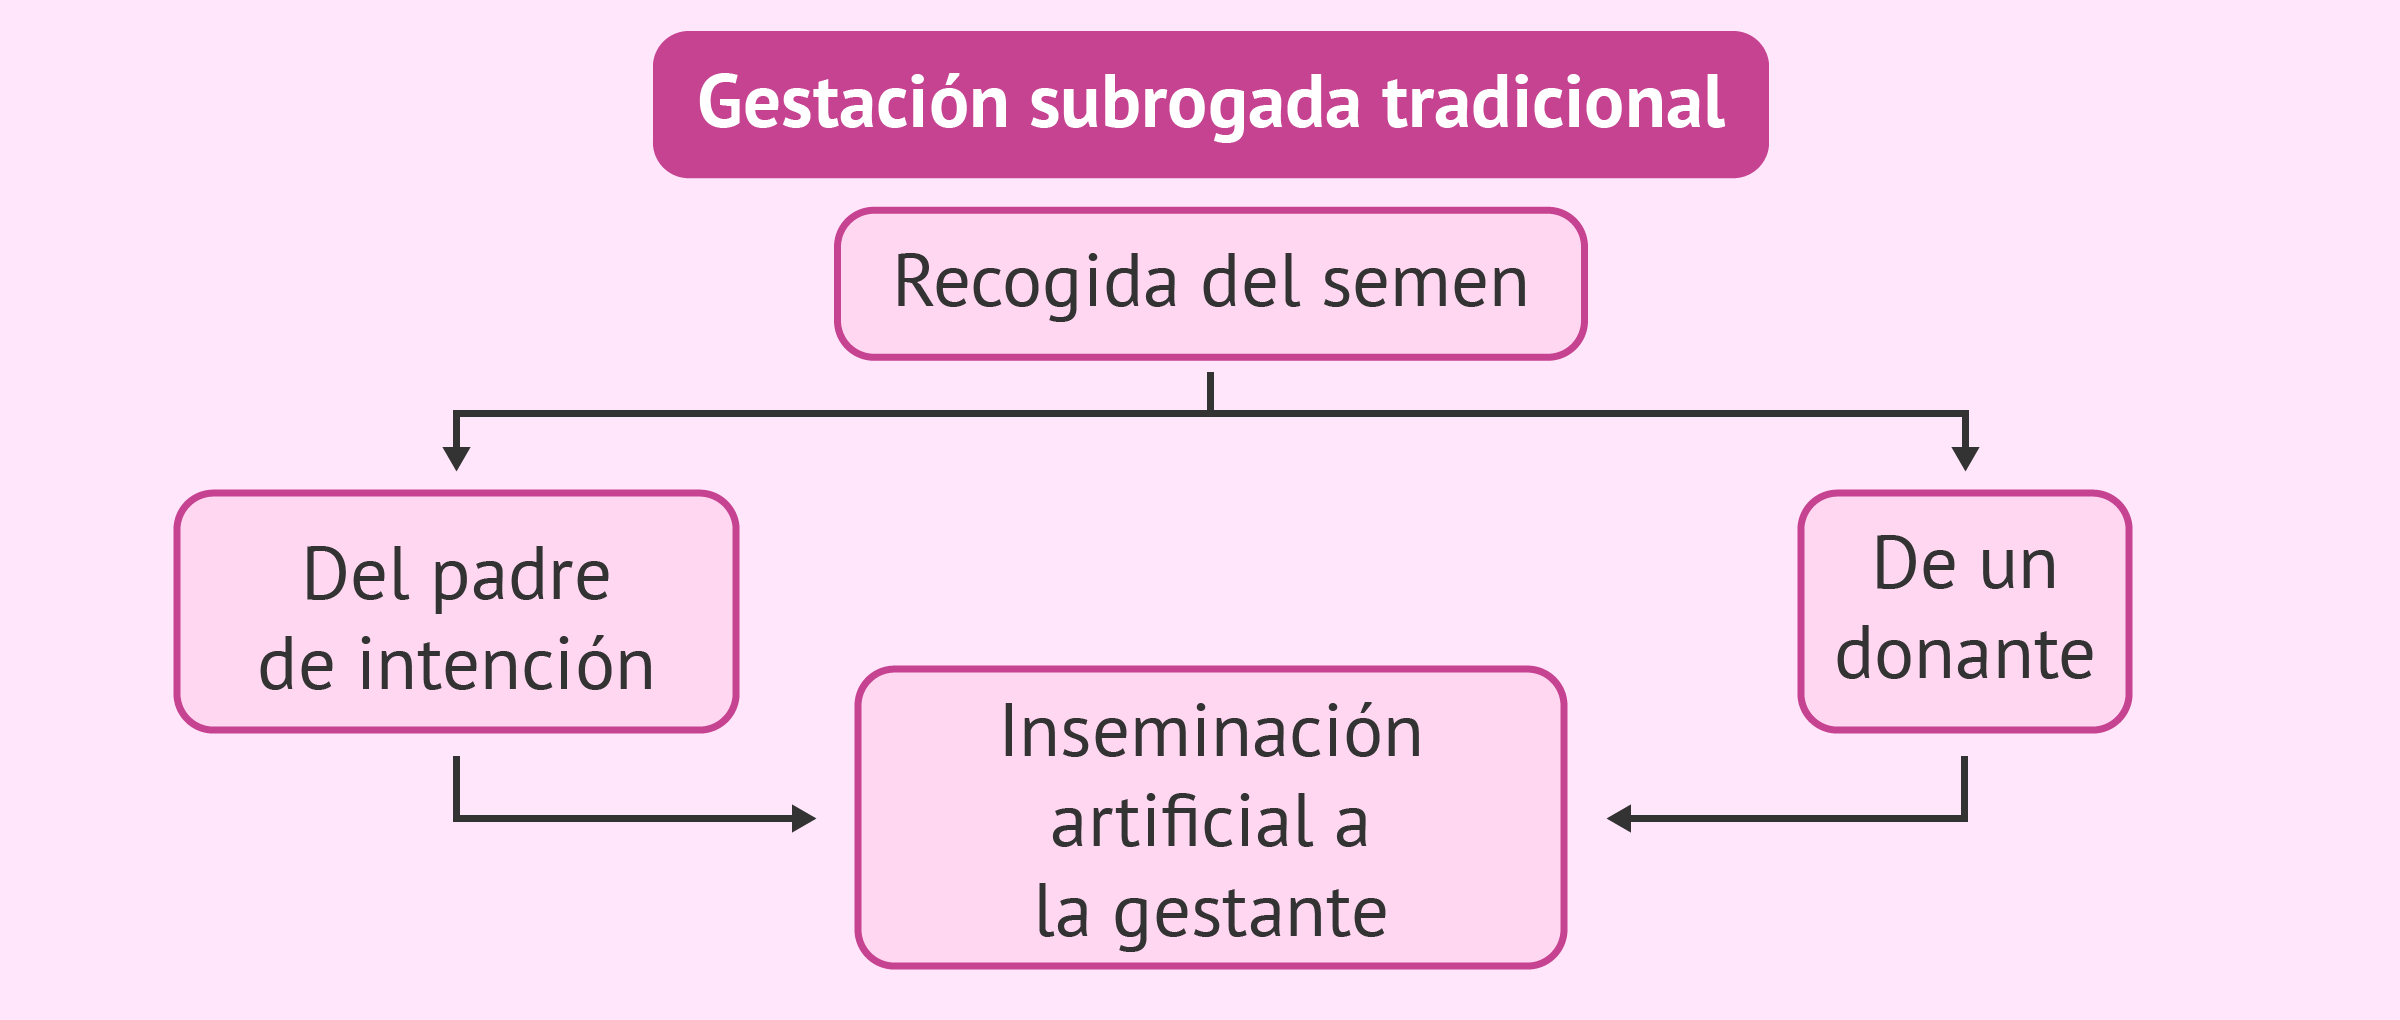 Combinaciones posibles en gestación subrogada tradicional